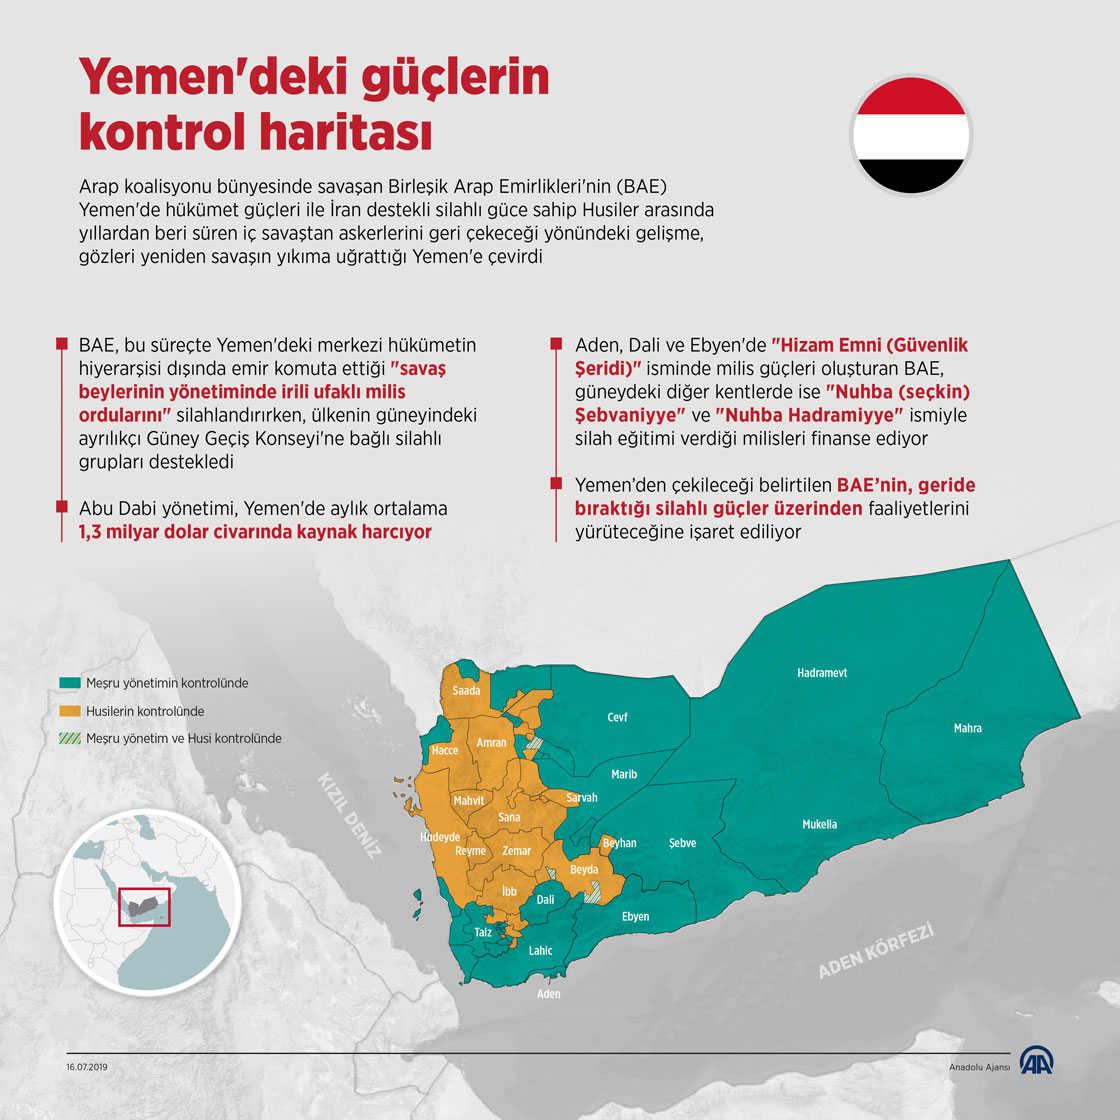 Yemen'deki güçlerin kontrol haritası